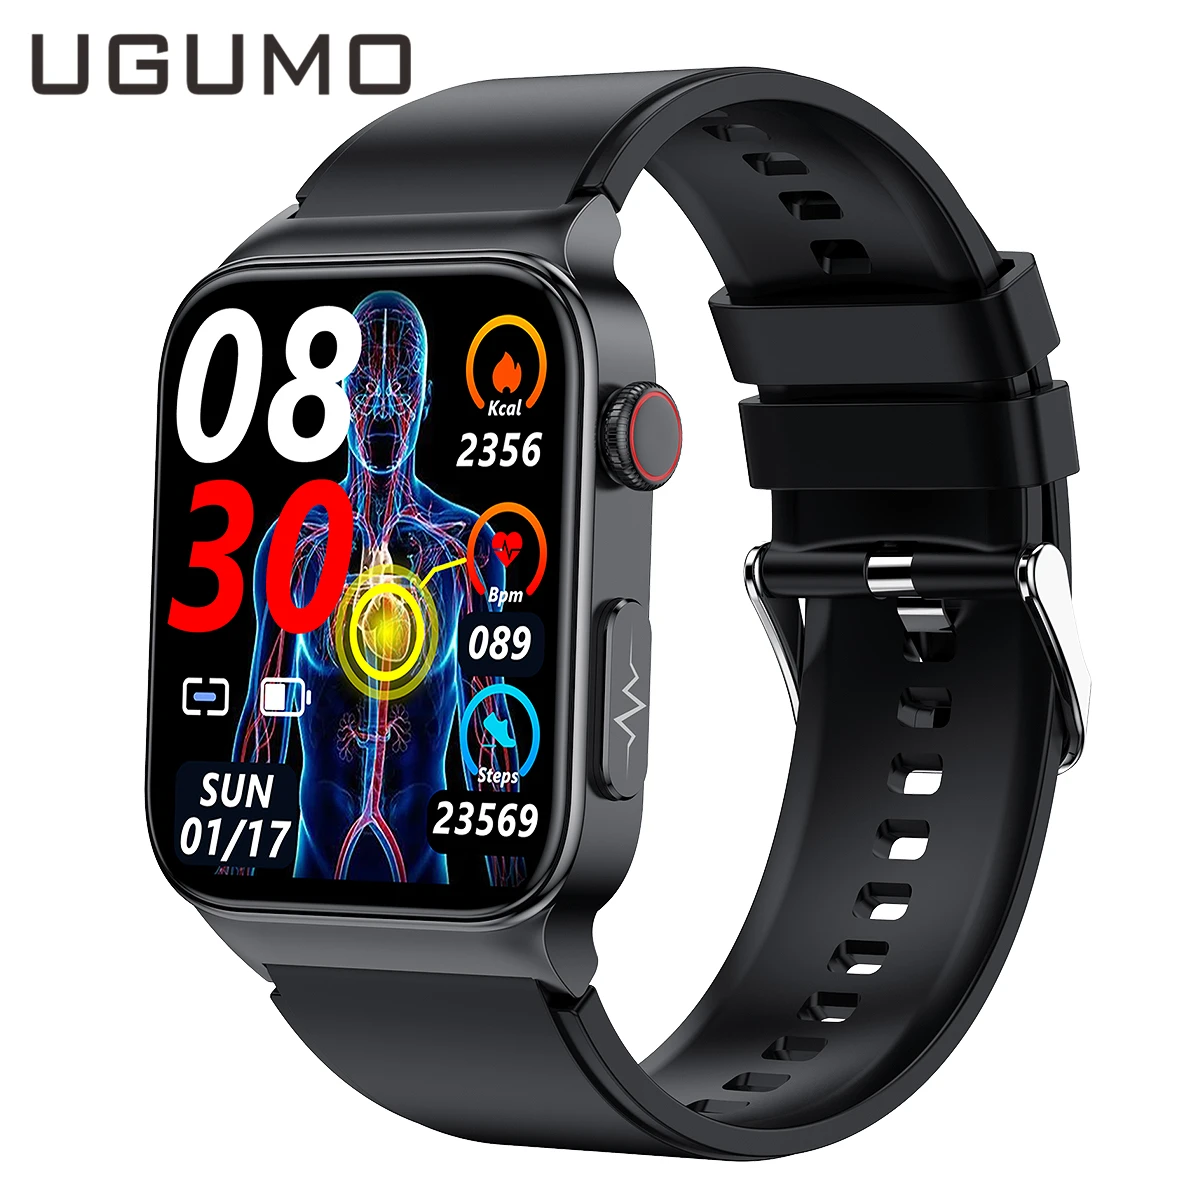 

Умные часы UGUMO ECG + PPG, неинвазивные Смарт-часы с функцией измерения уровня глюкозы в крови, тонометр, электрокардиограмма, часы с контролем температуры